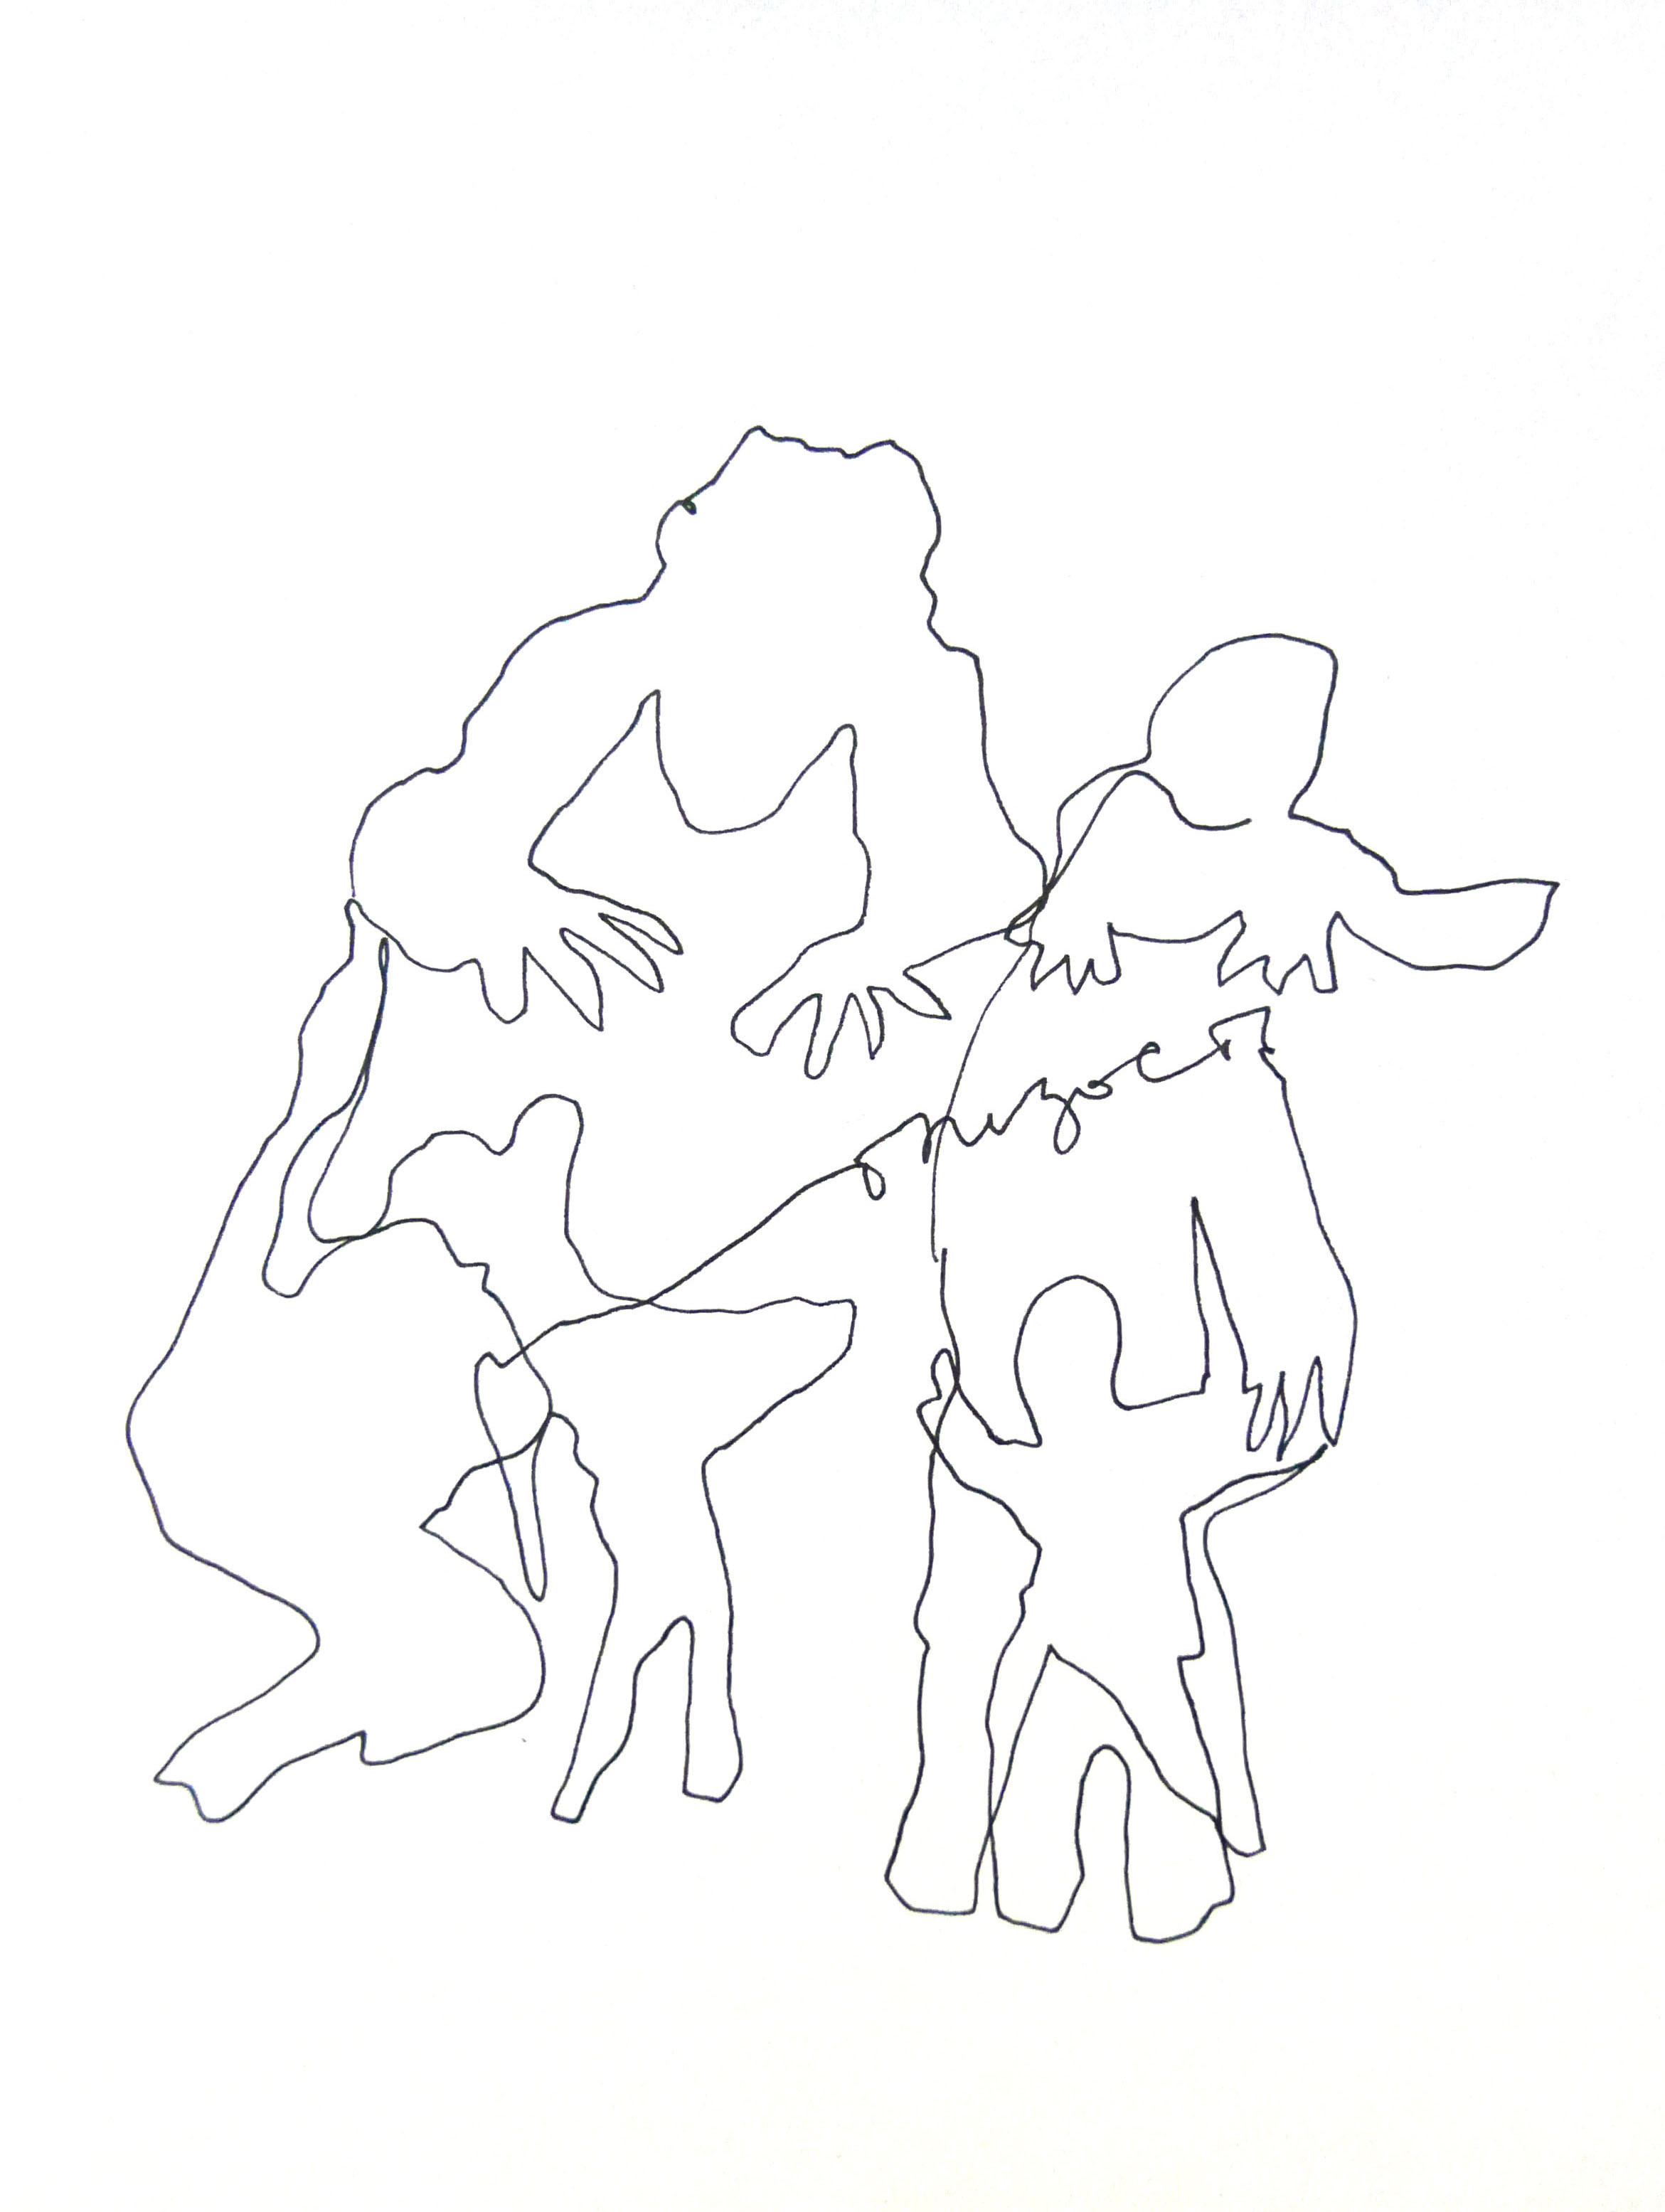 «Близость»&nbsp;— совместный рисунок Надежды Ишкиняевой и&nbsp;Марины Шамовой для образовательного проекта «Траектории внимания»[1]